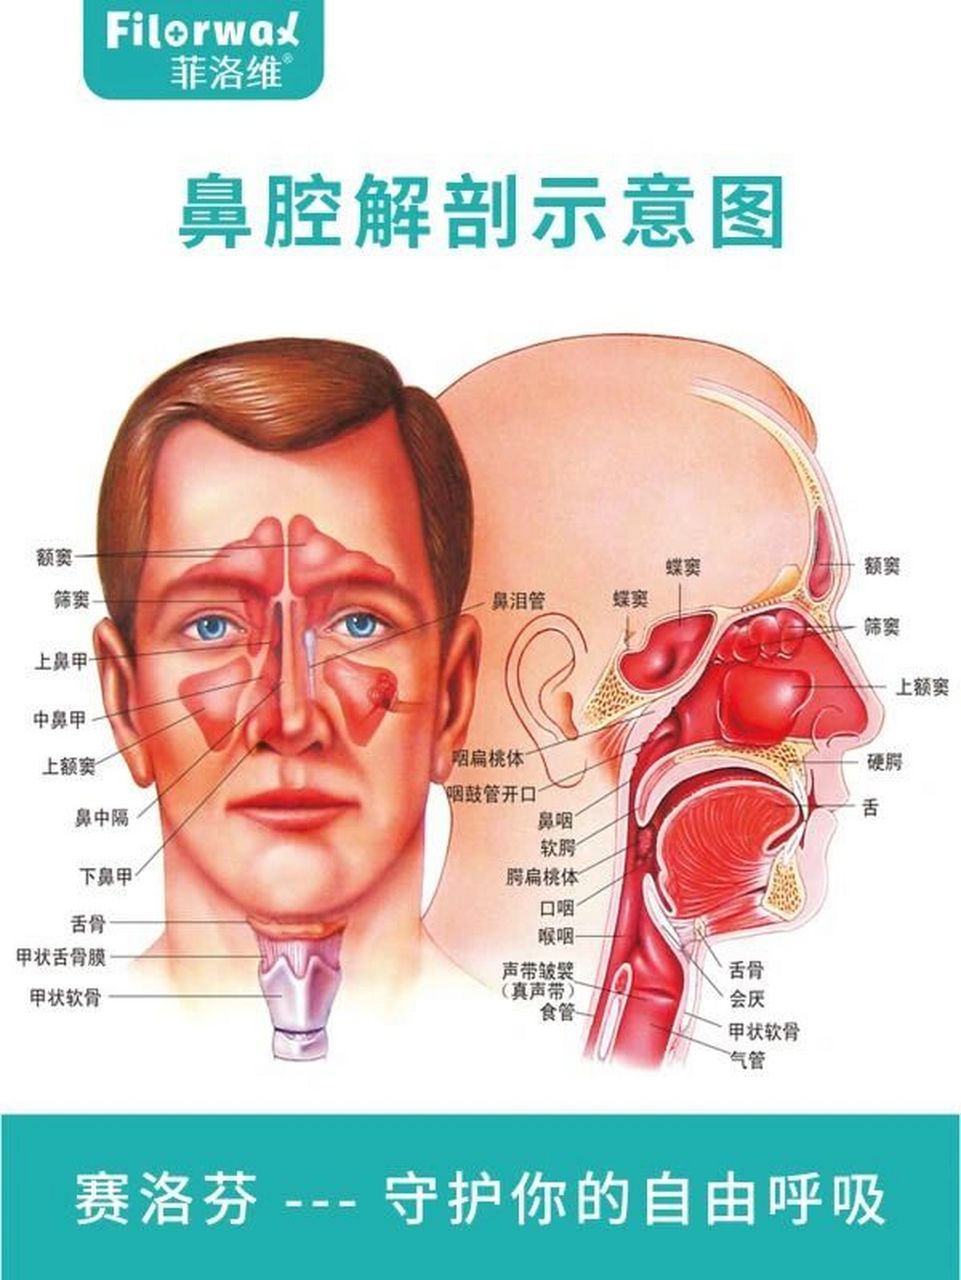 鼻部组织解剖详细图图片